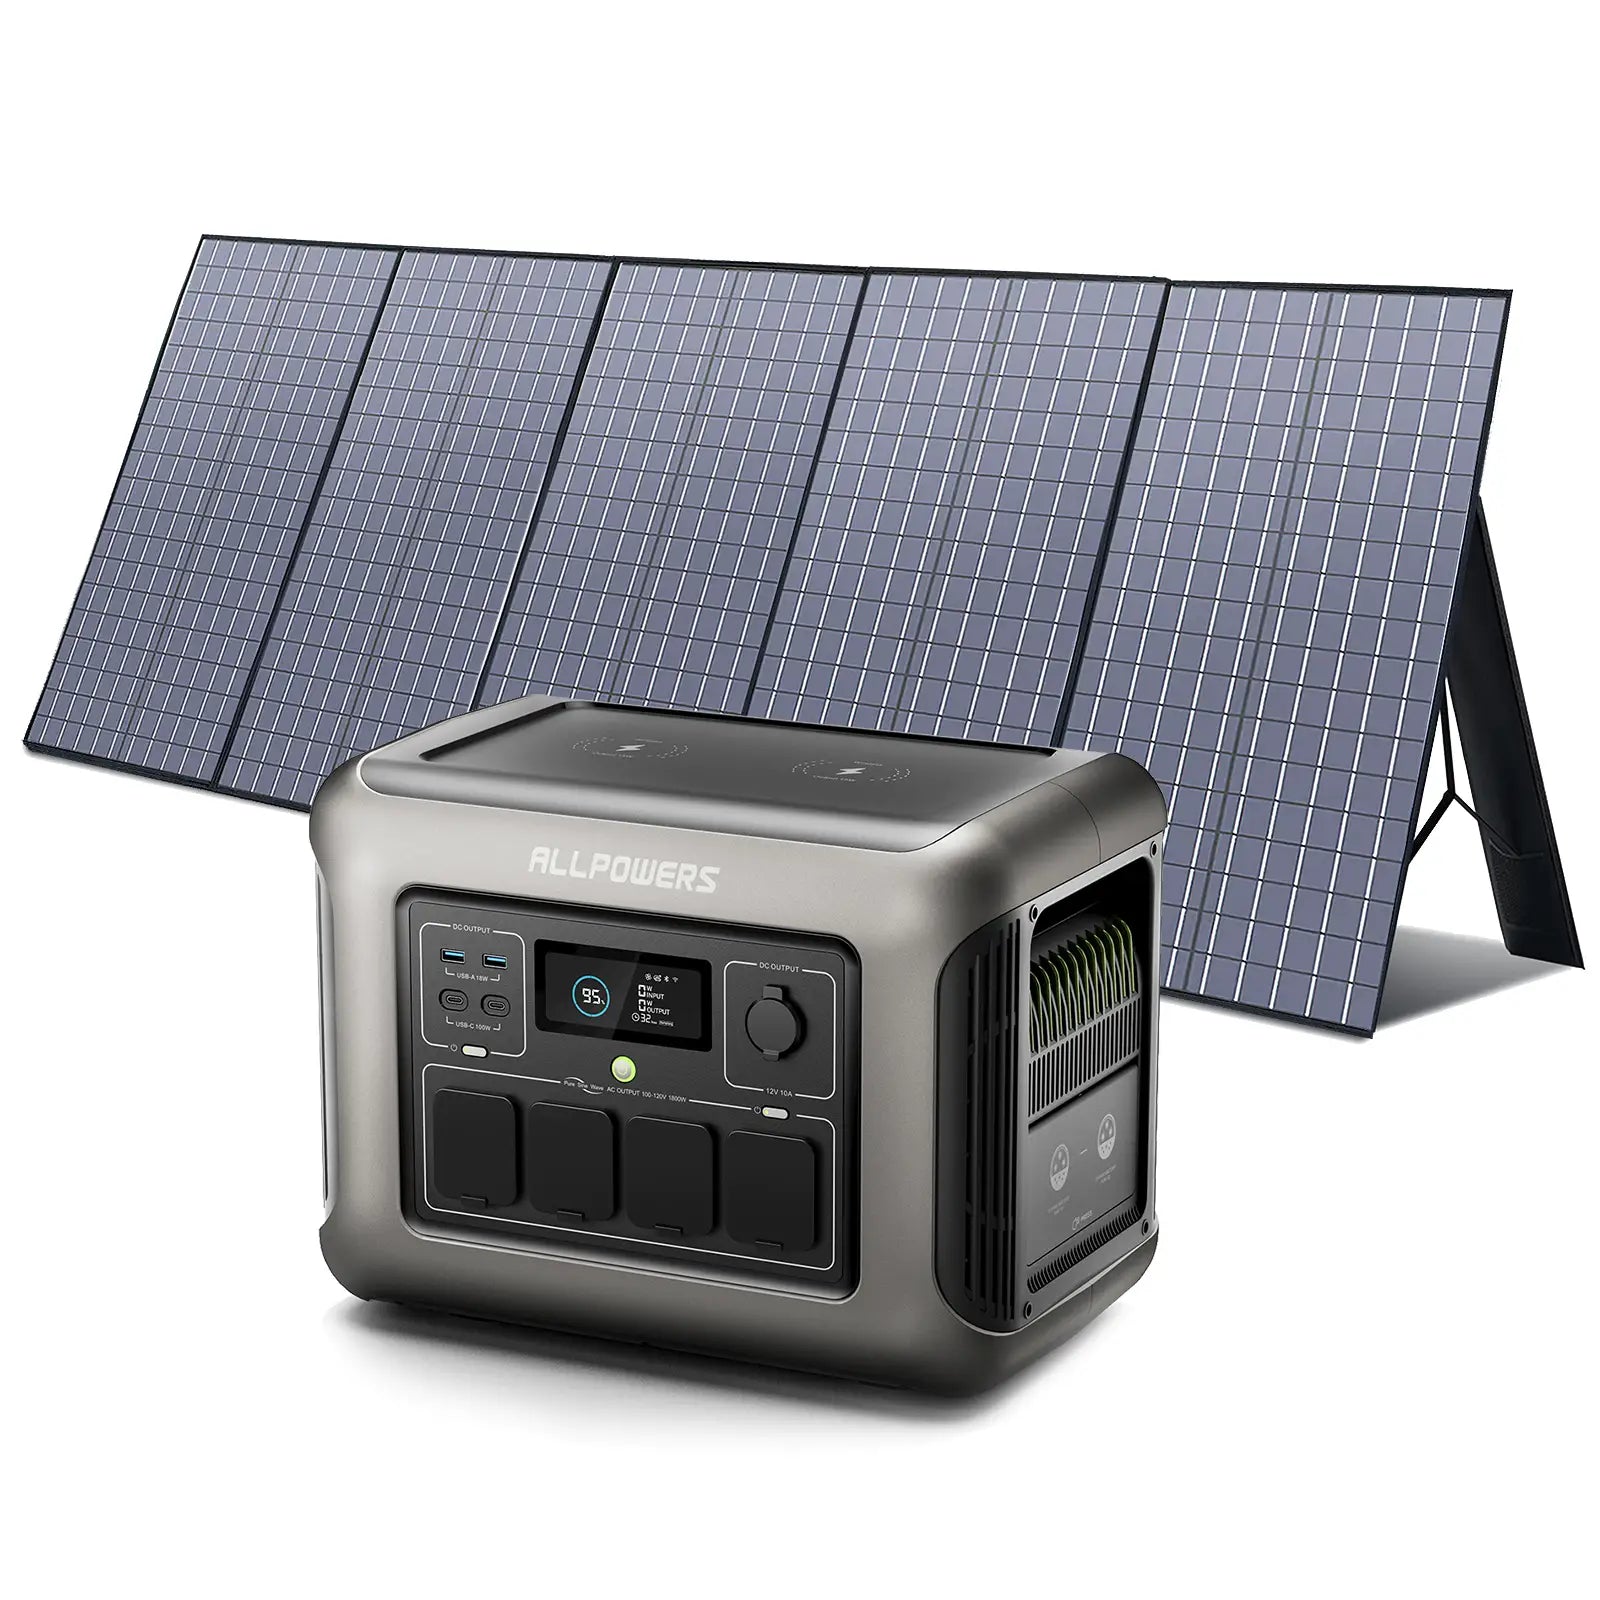 ALLPOWERS Kit Generatore Solare 1800W (R1500 + SP037 400W Pannello Solare)